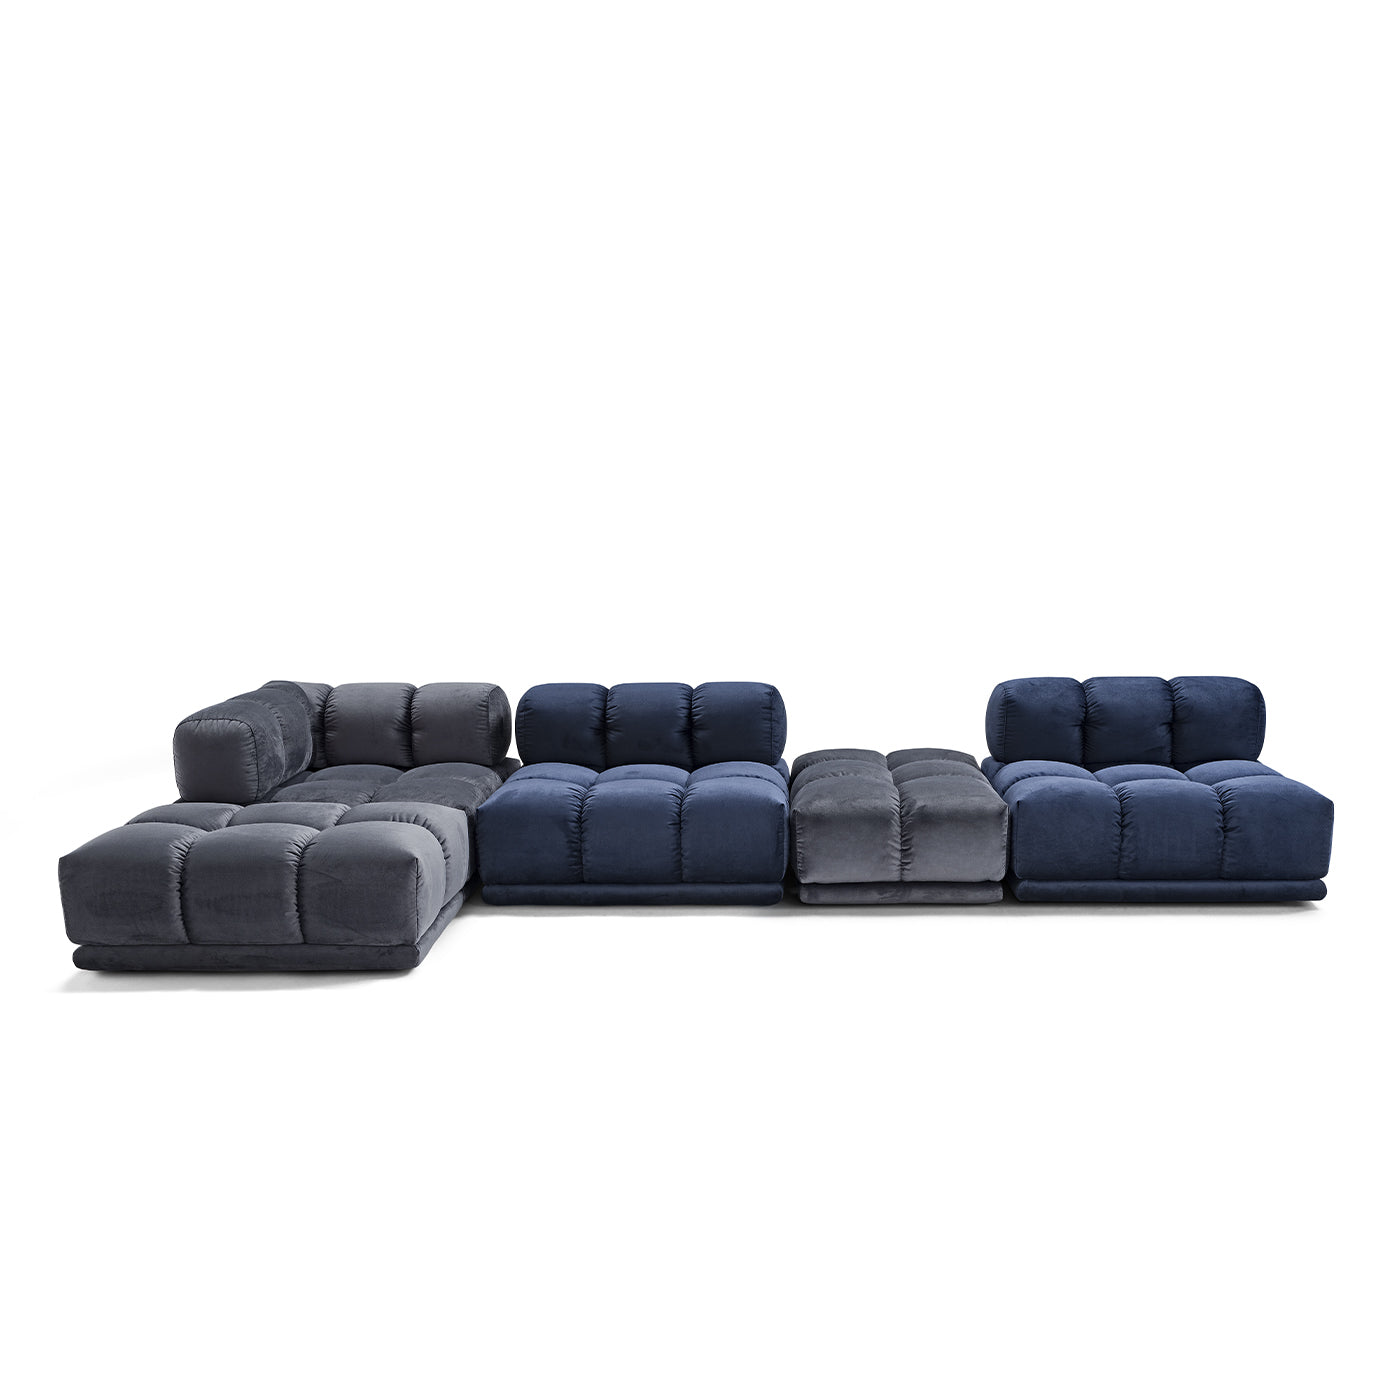 Sacai Modular Gray and Blue Sofa - Alternative view 1